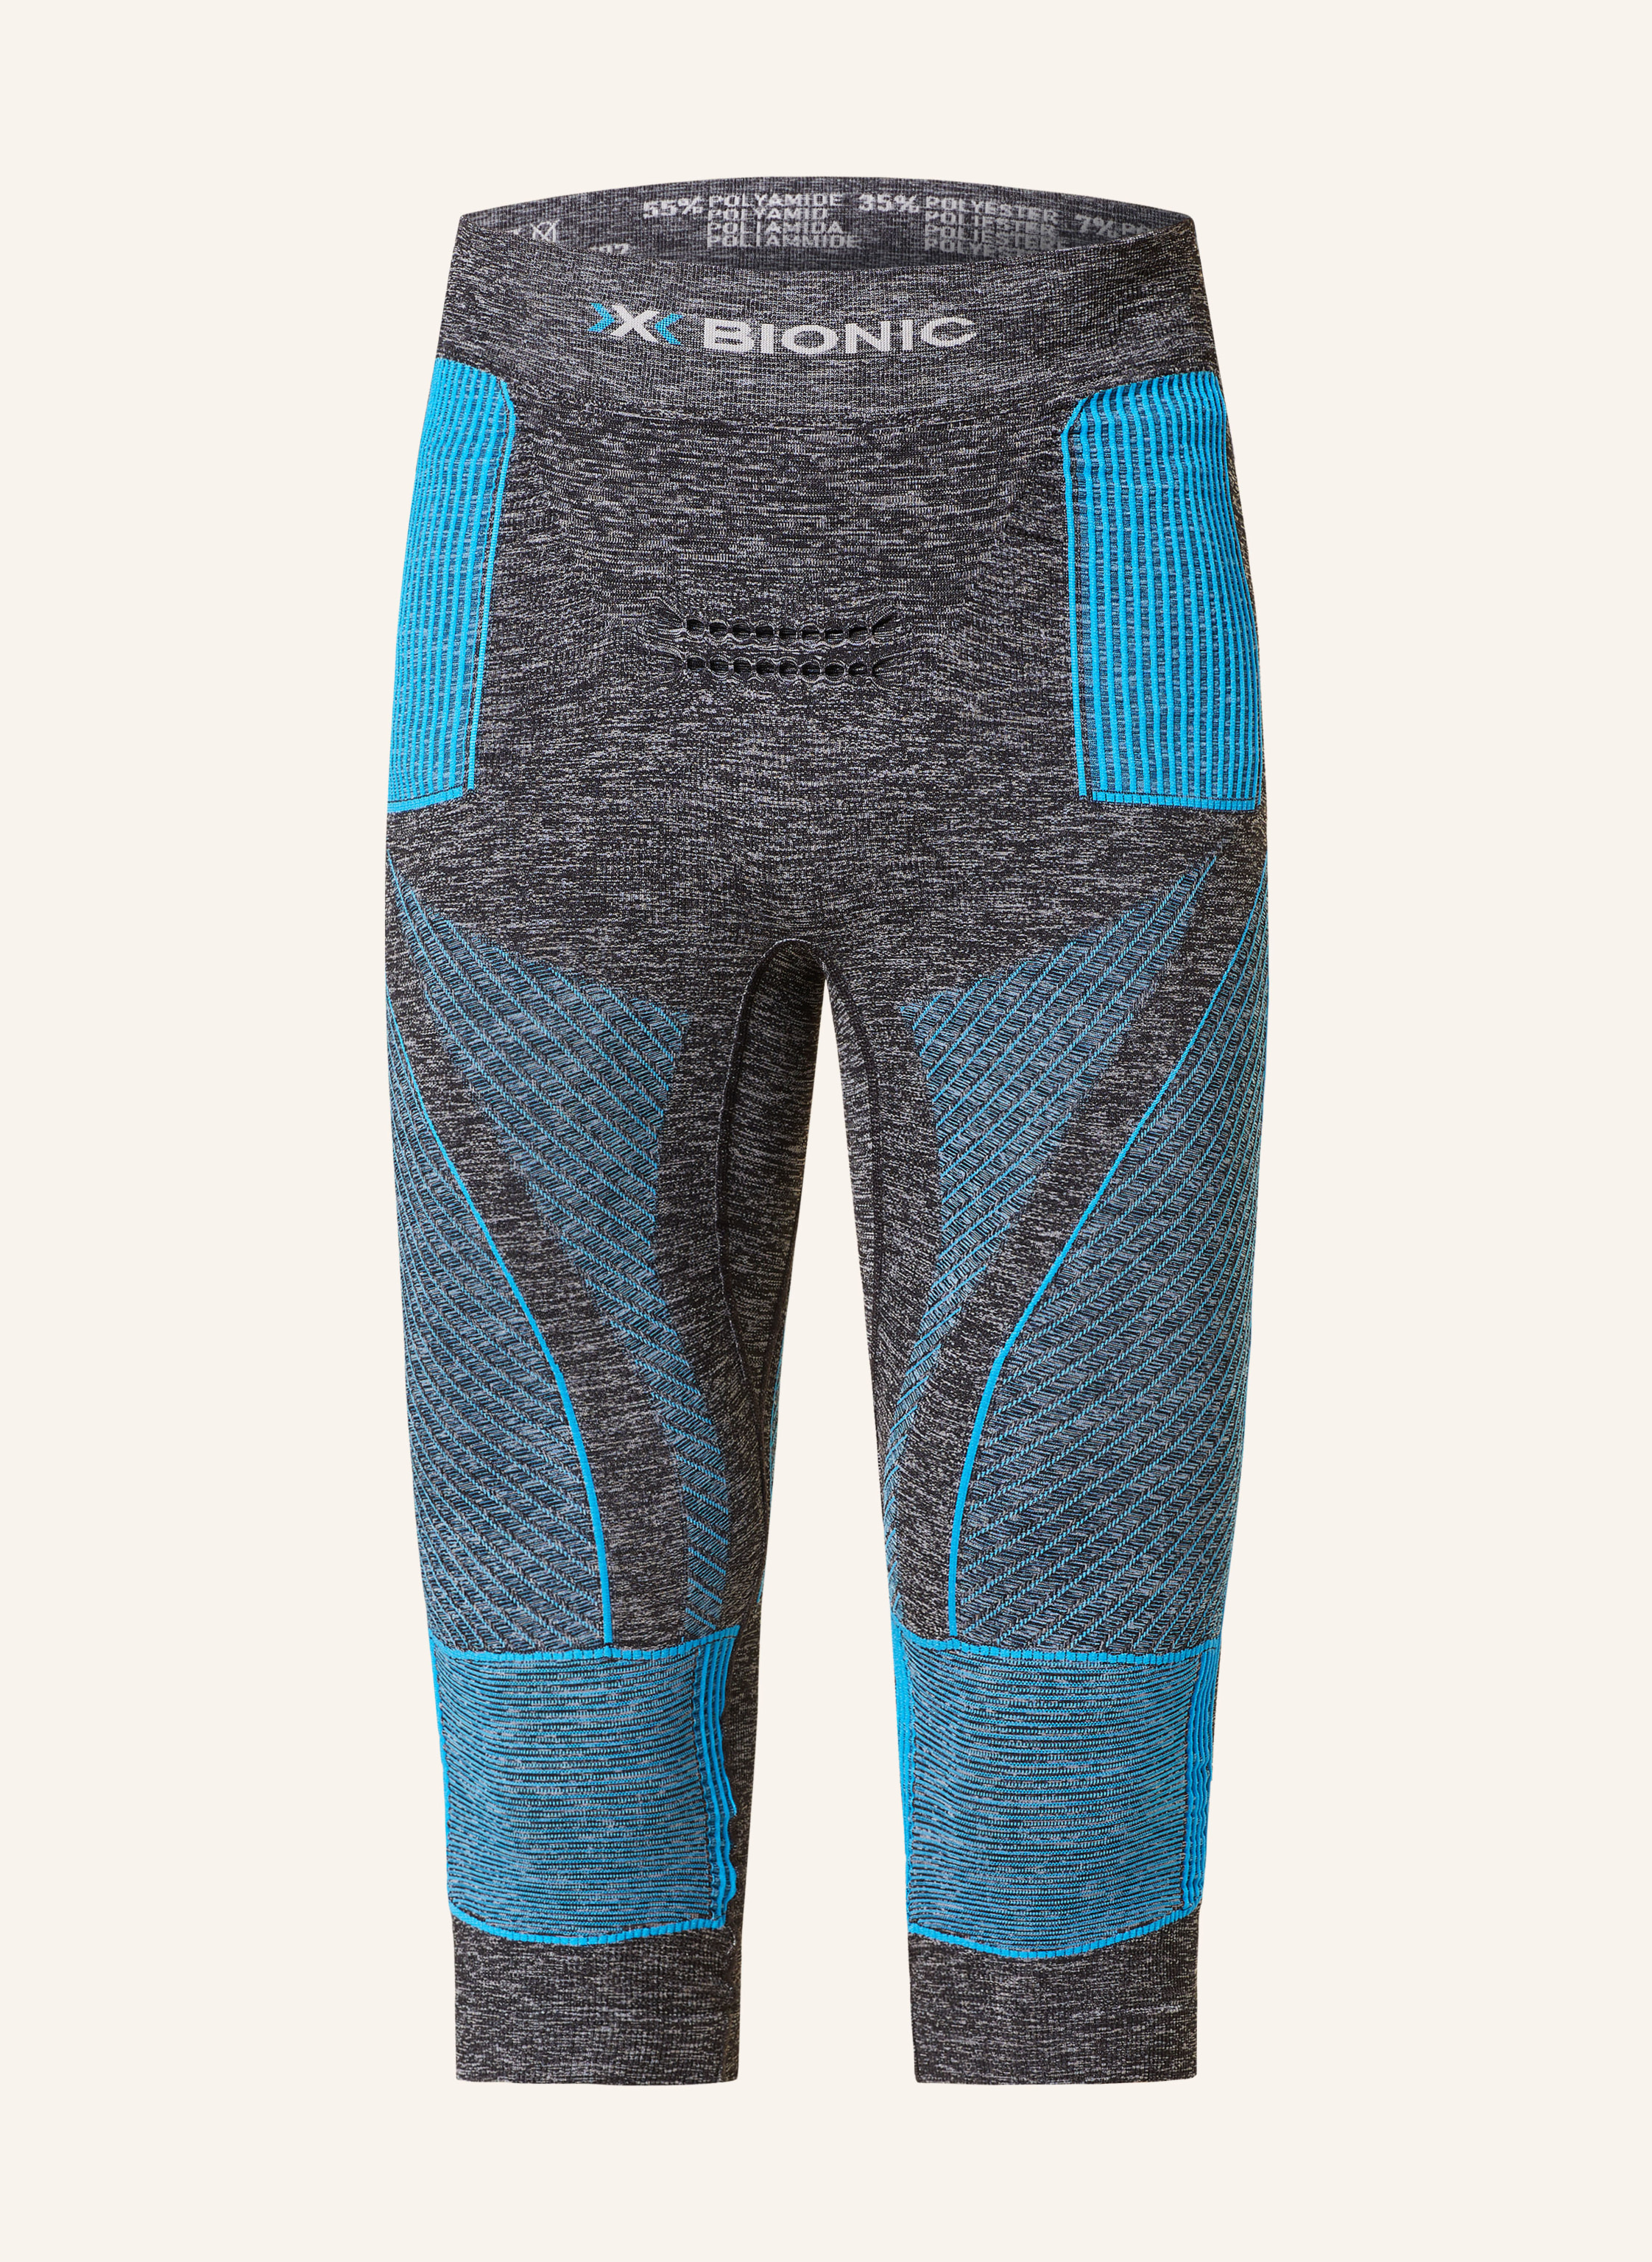 Technical sportswear for women – X-BIONIC